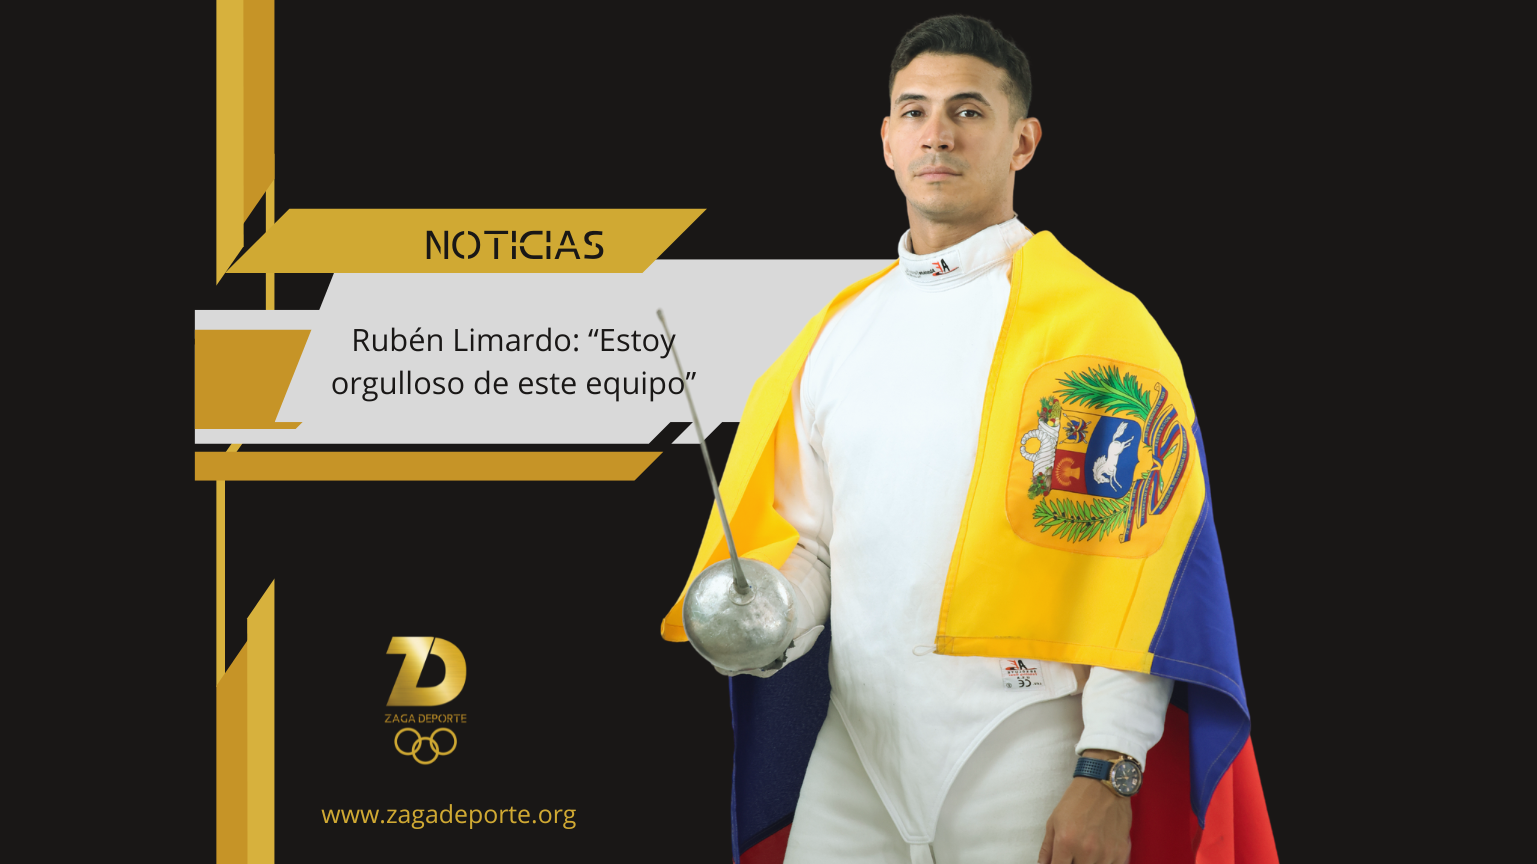 Rubén Limardo: “Estoy orgulloso de este equipo”